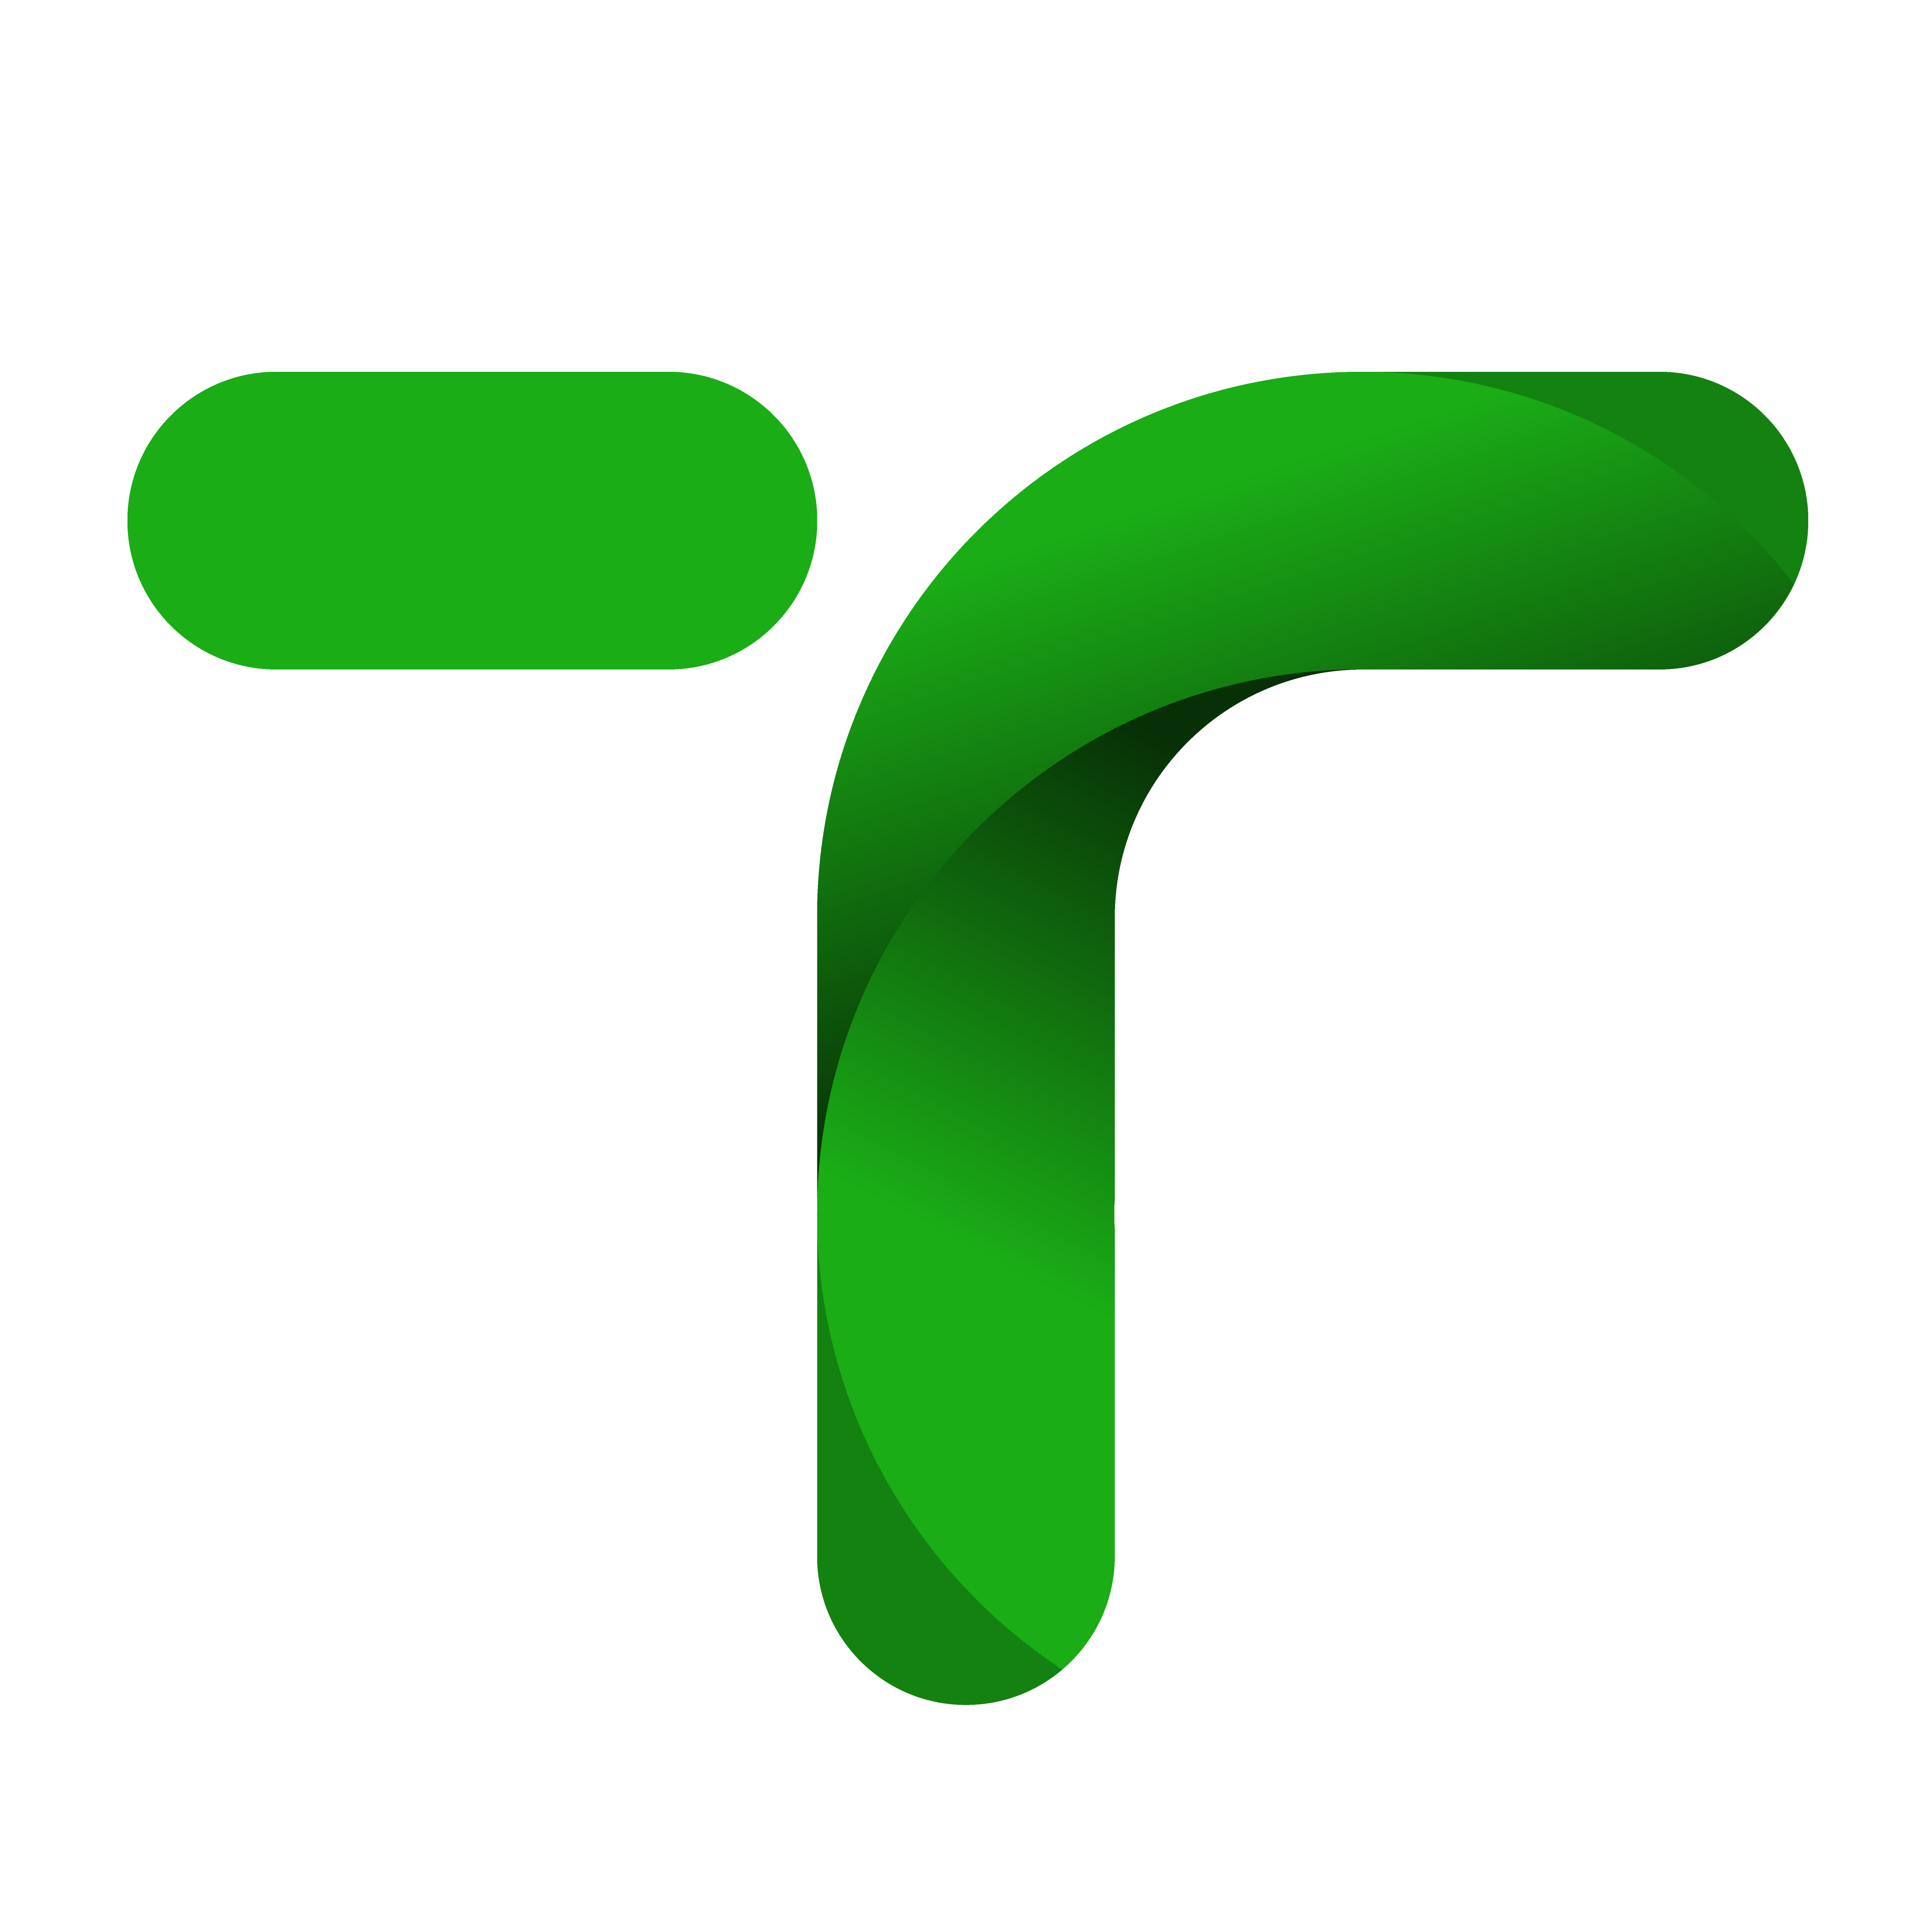 Trixnity's logo